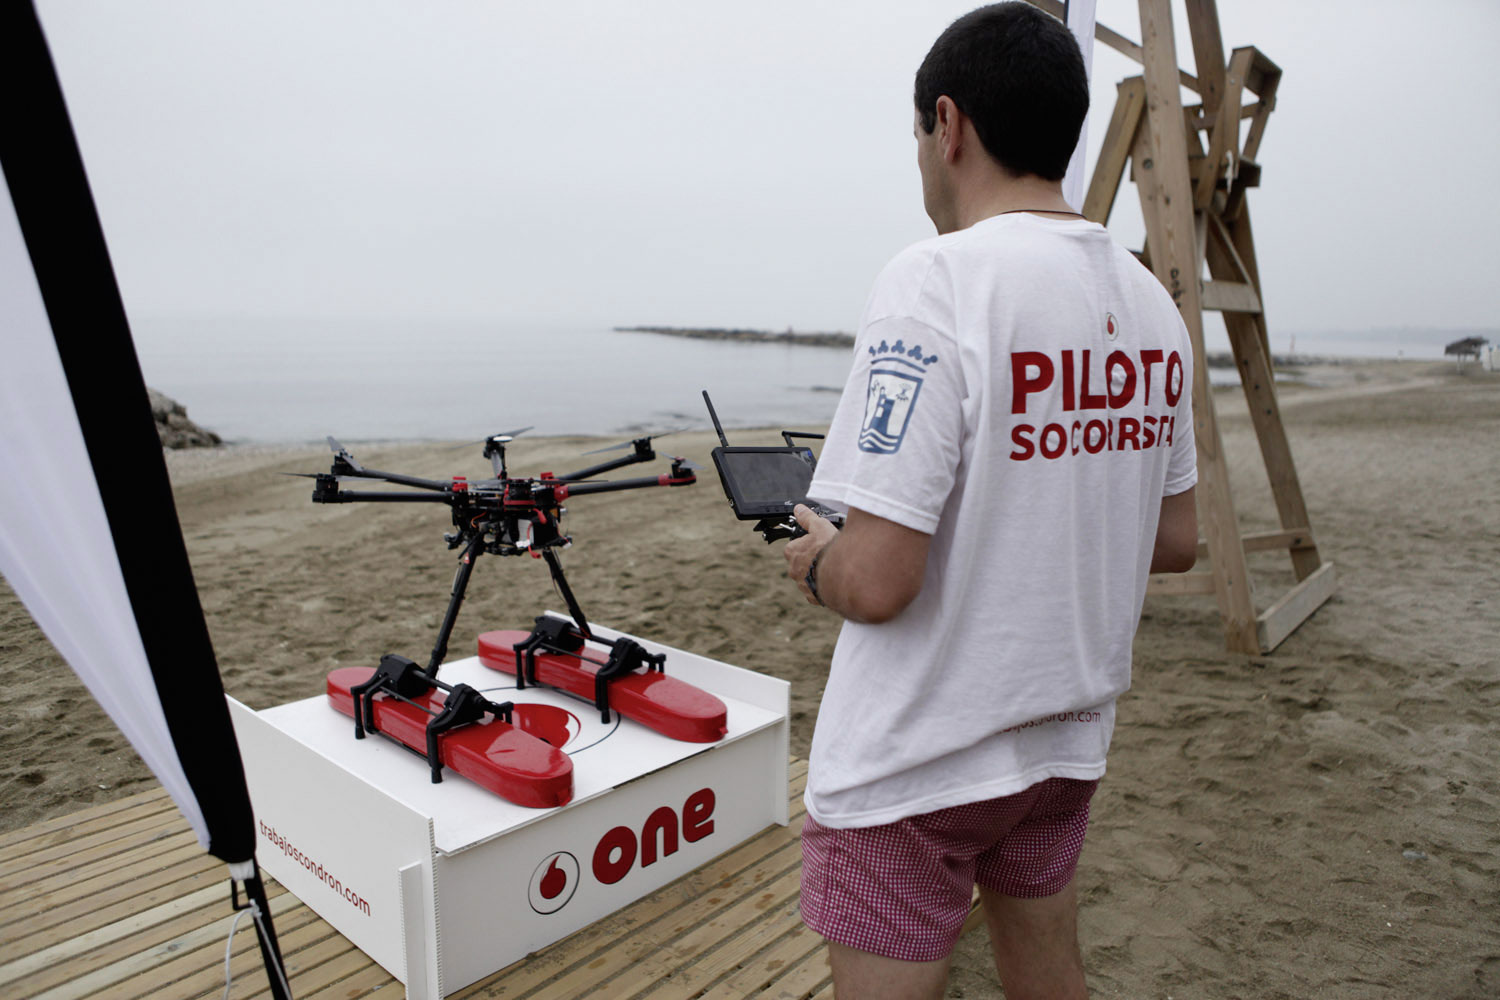 Vodafone pone en marcha la iniciativa pionera de drones socorristas en playas españolas